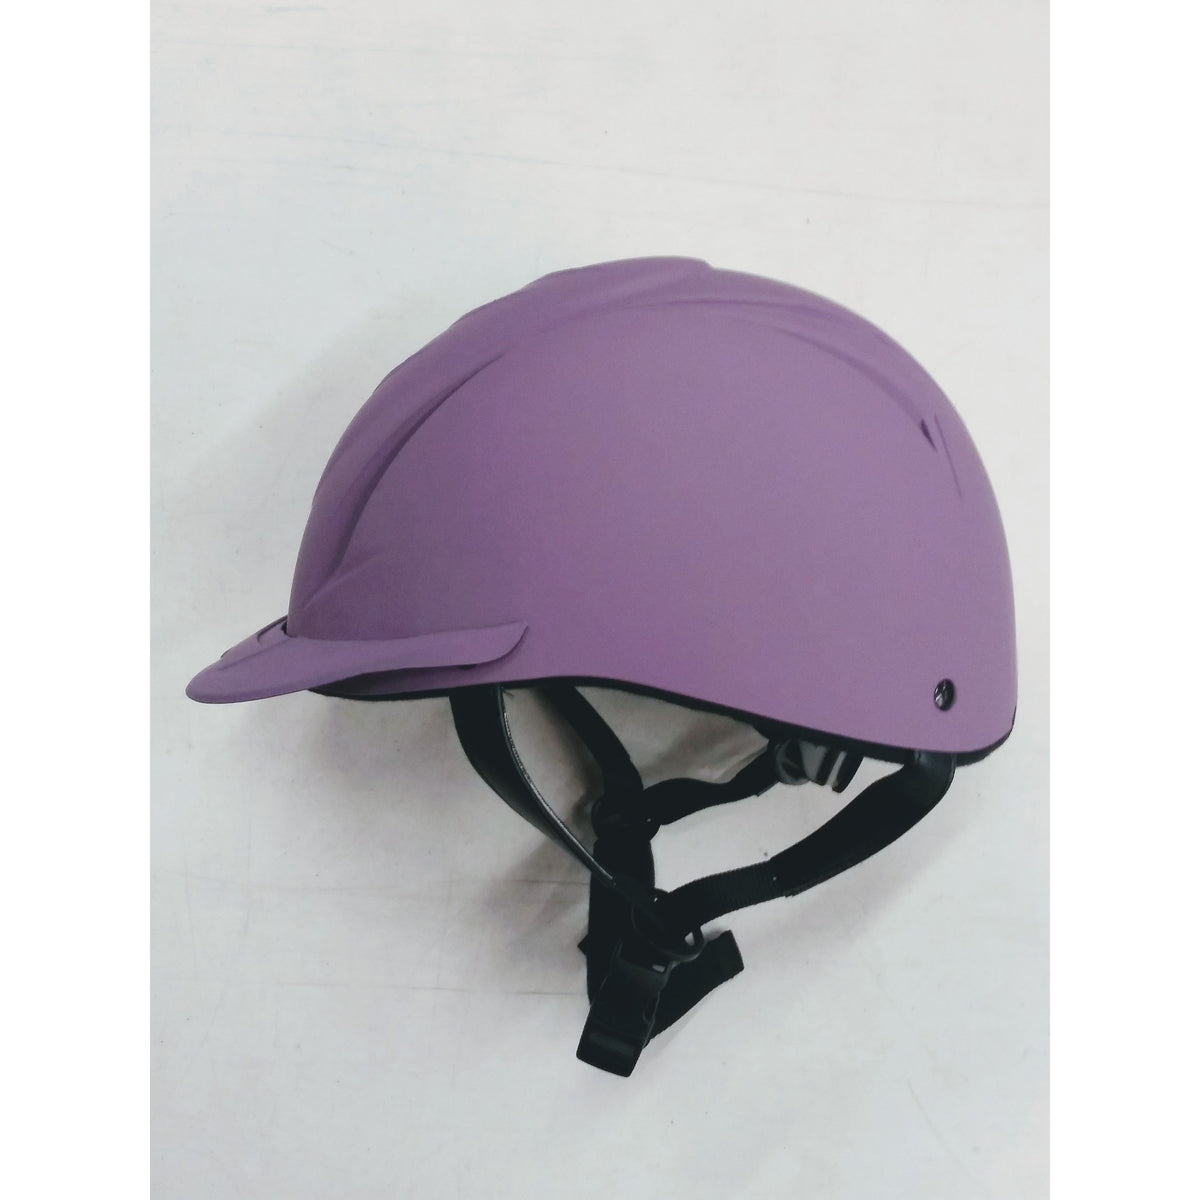 Ovation Schooler Helmet-Purple-Medium/Large - Used - Good